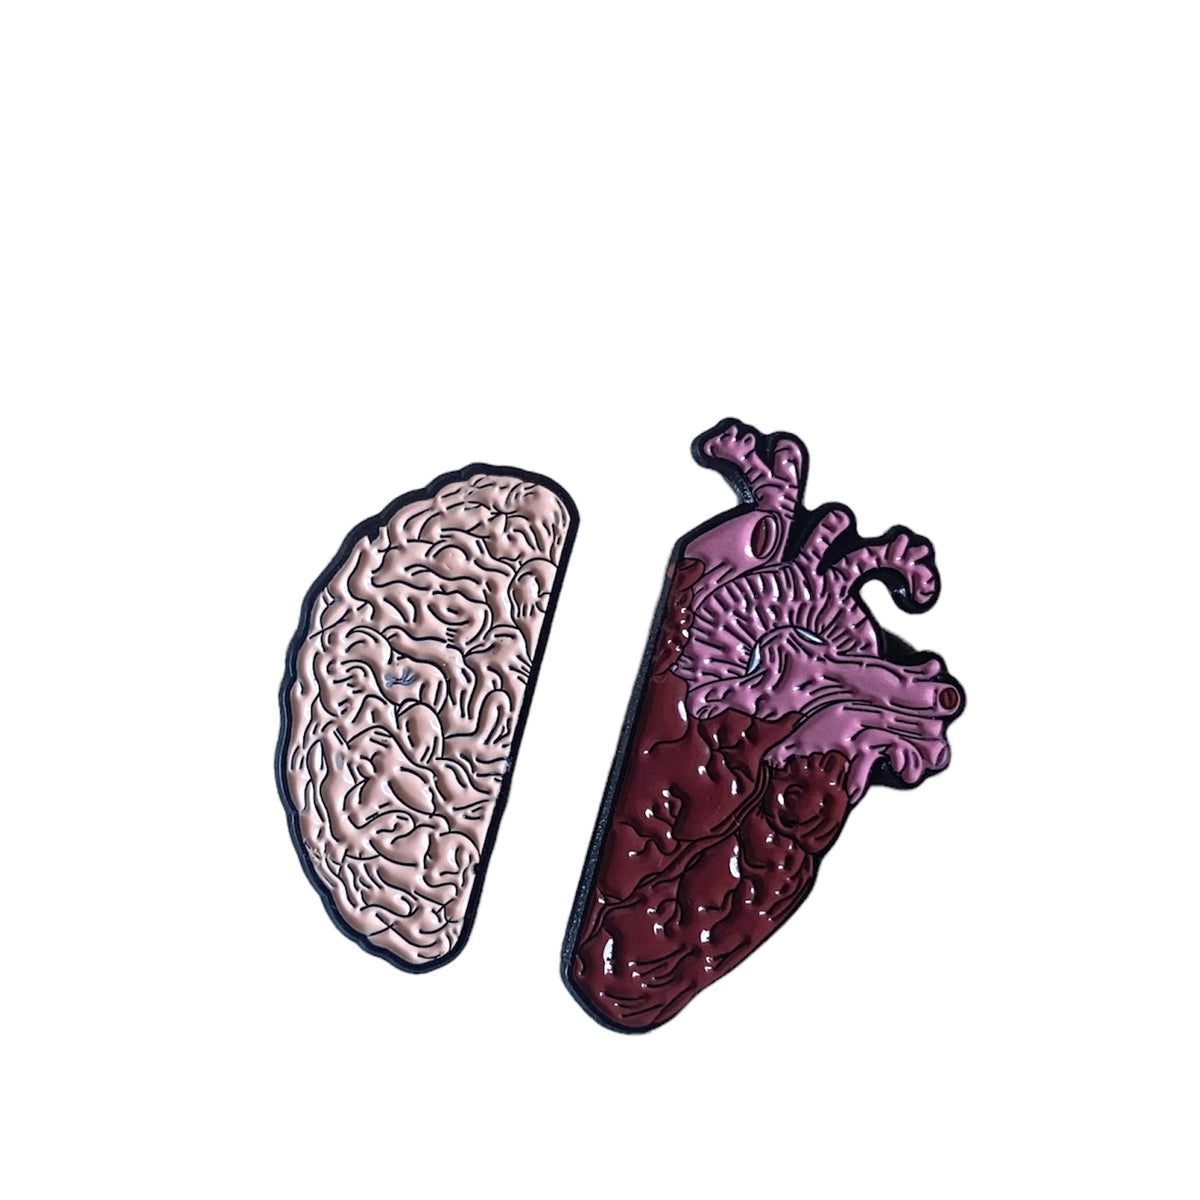 Corazón y Cerebro